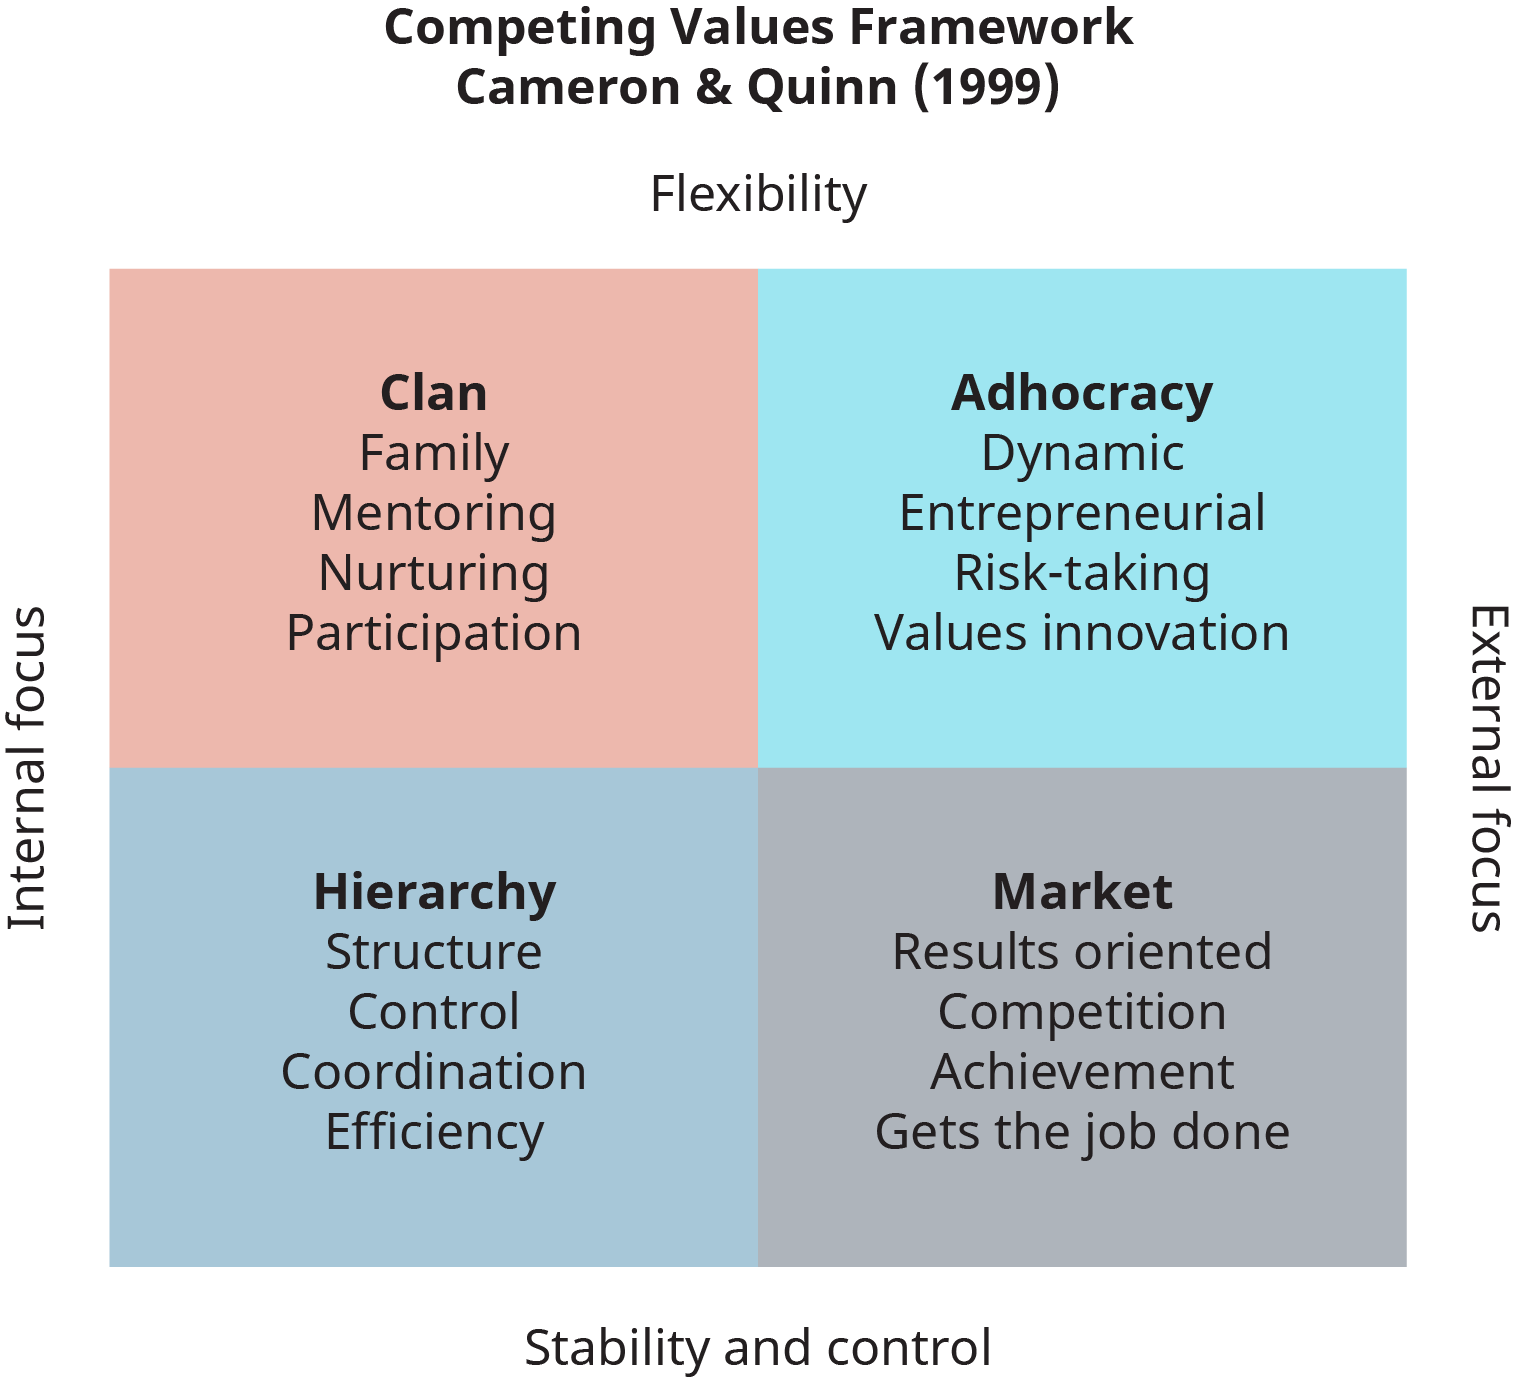 Un diagrama muestra el Marco de Valores Competidores para la evaluación cultural de las organizaciones, dado por Cameron y Quinn en 1999.